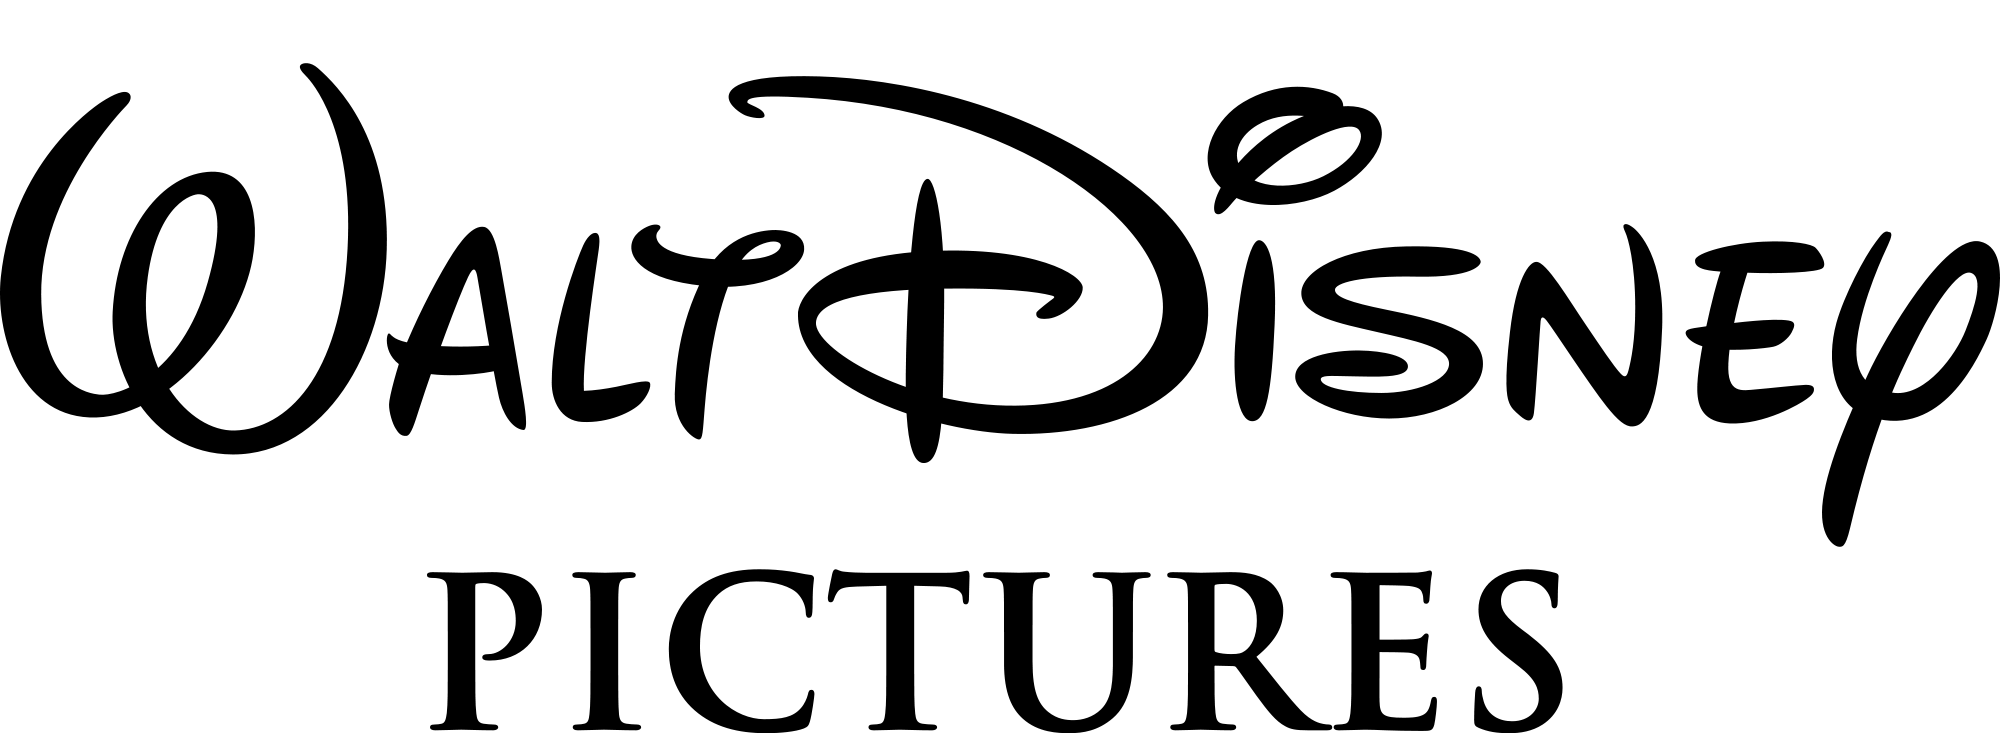 Old Walt Disney Logo - Walt Disney logo PNG image free download